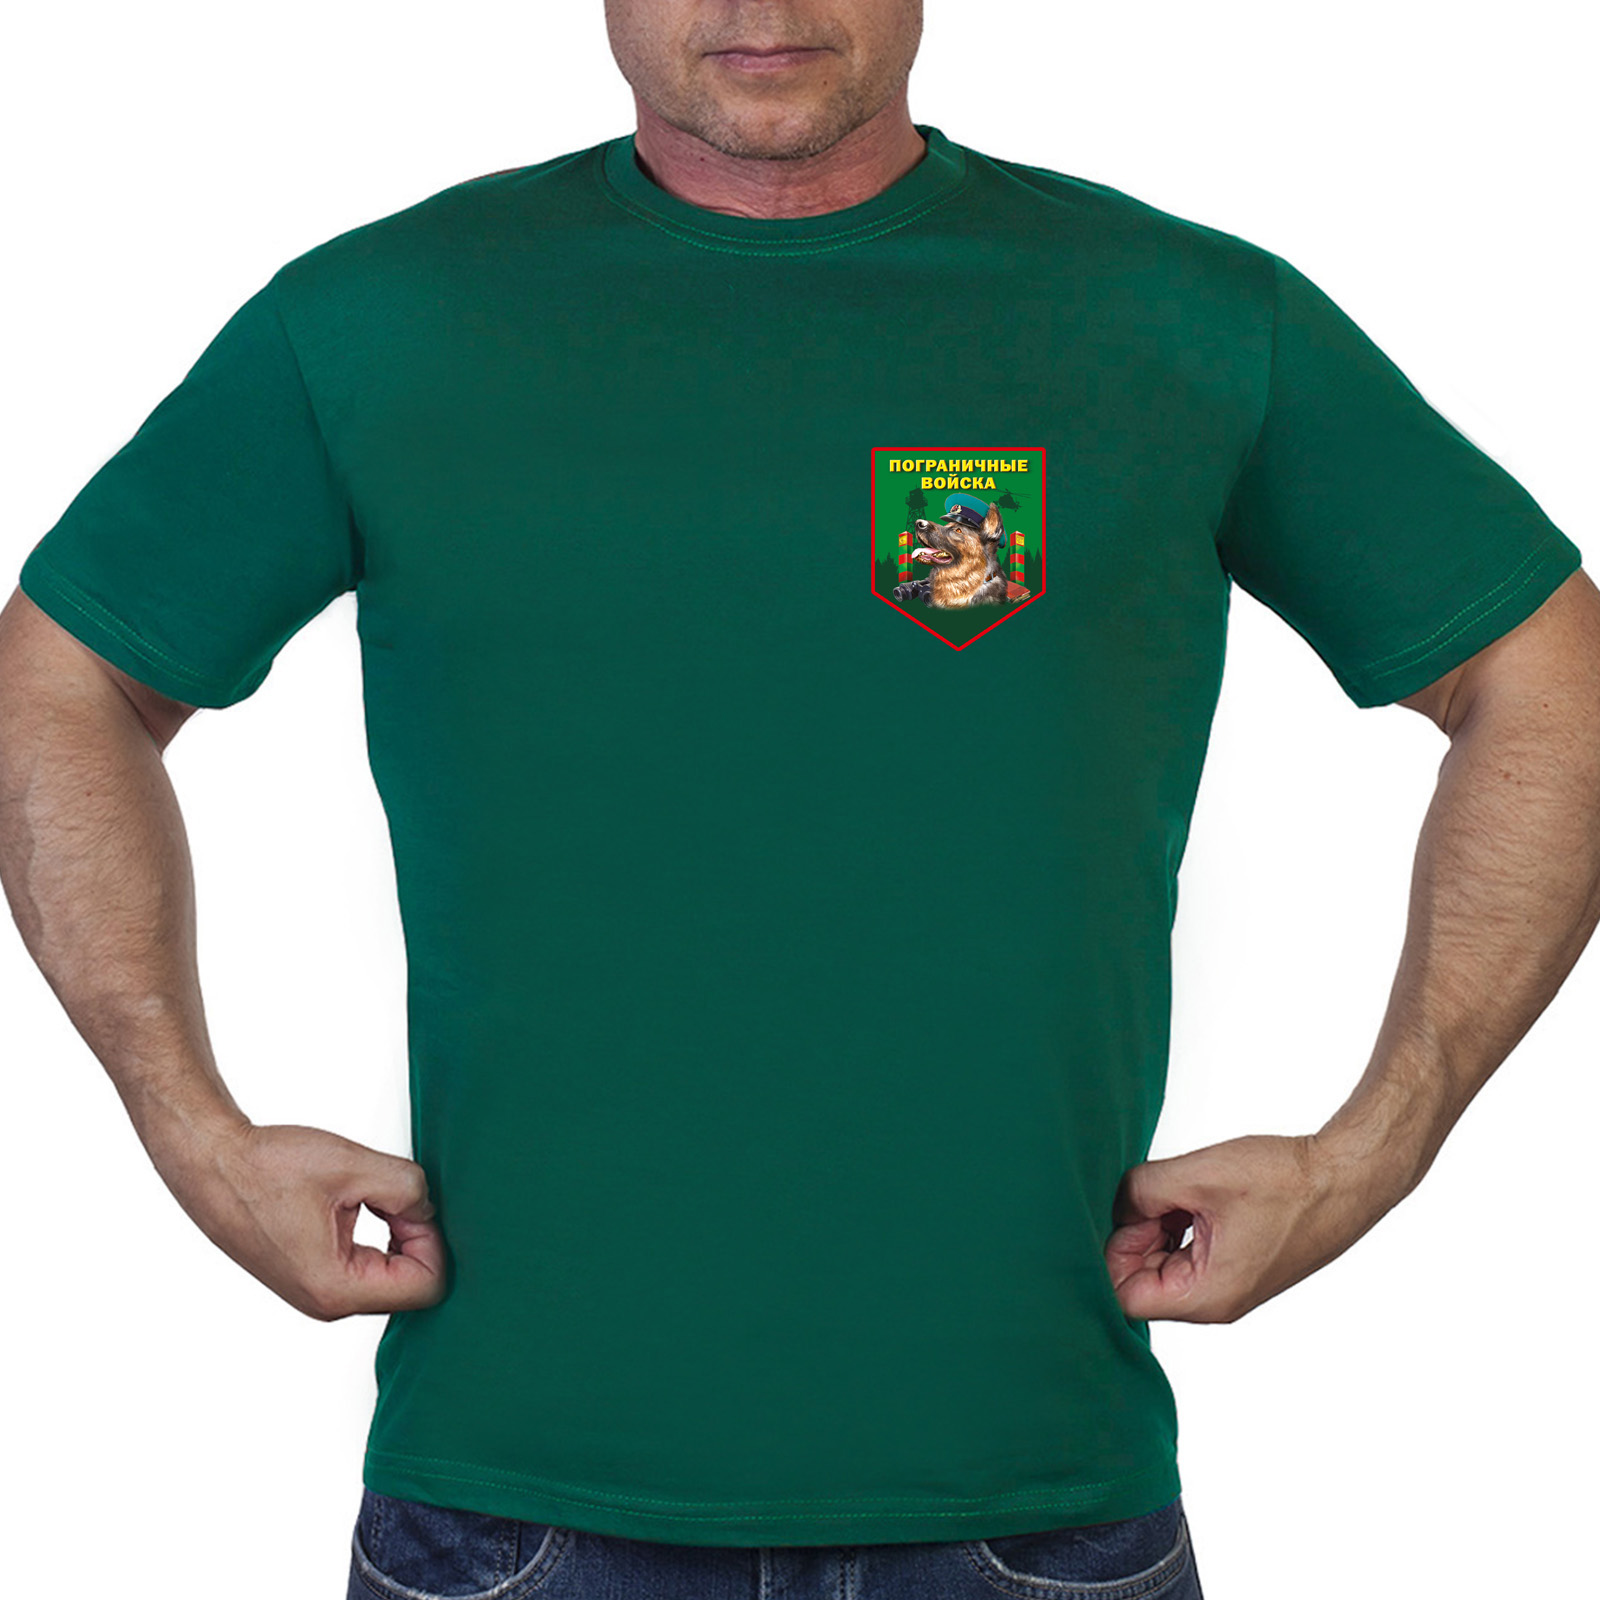 Зелёная футболка с термотрансфером пограничных войск